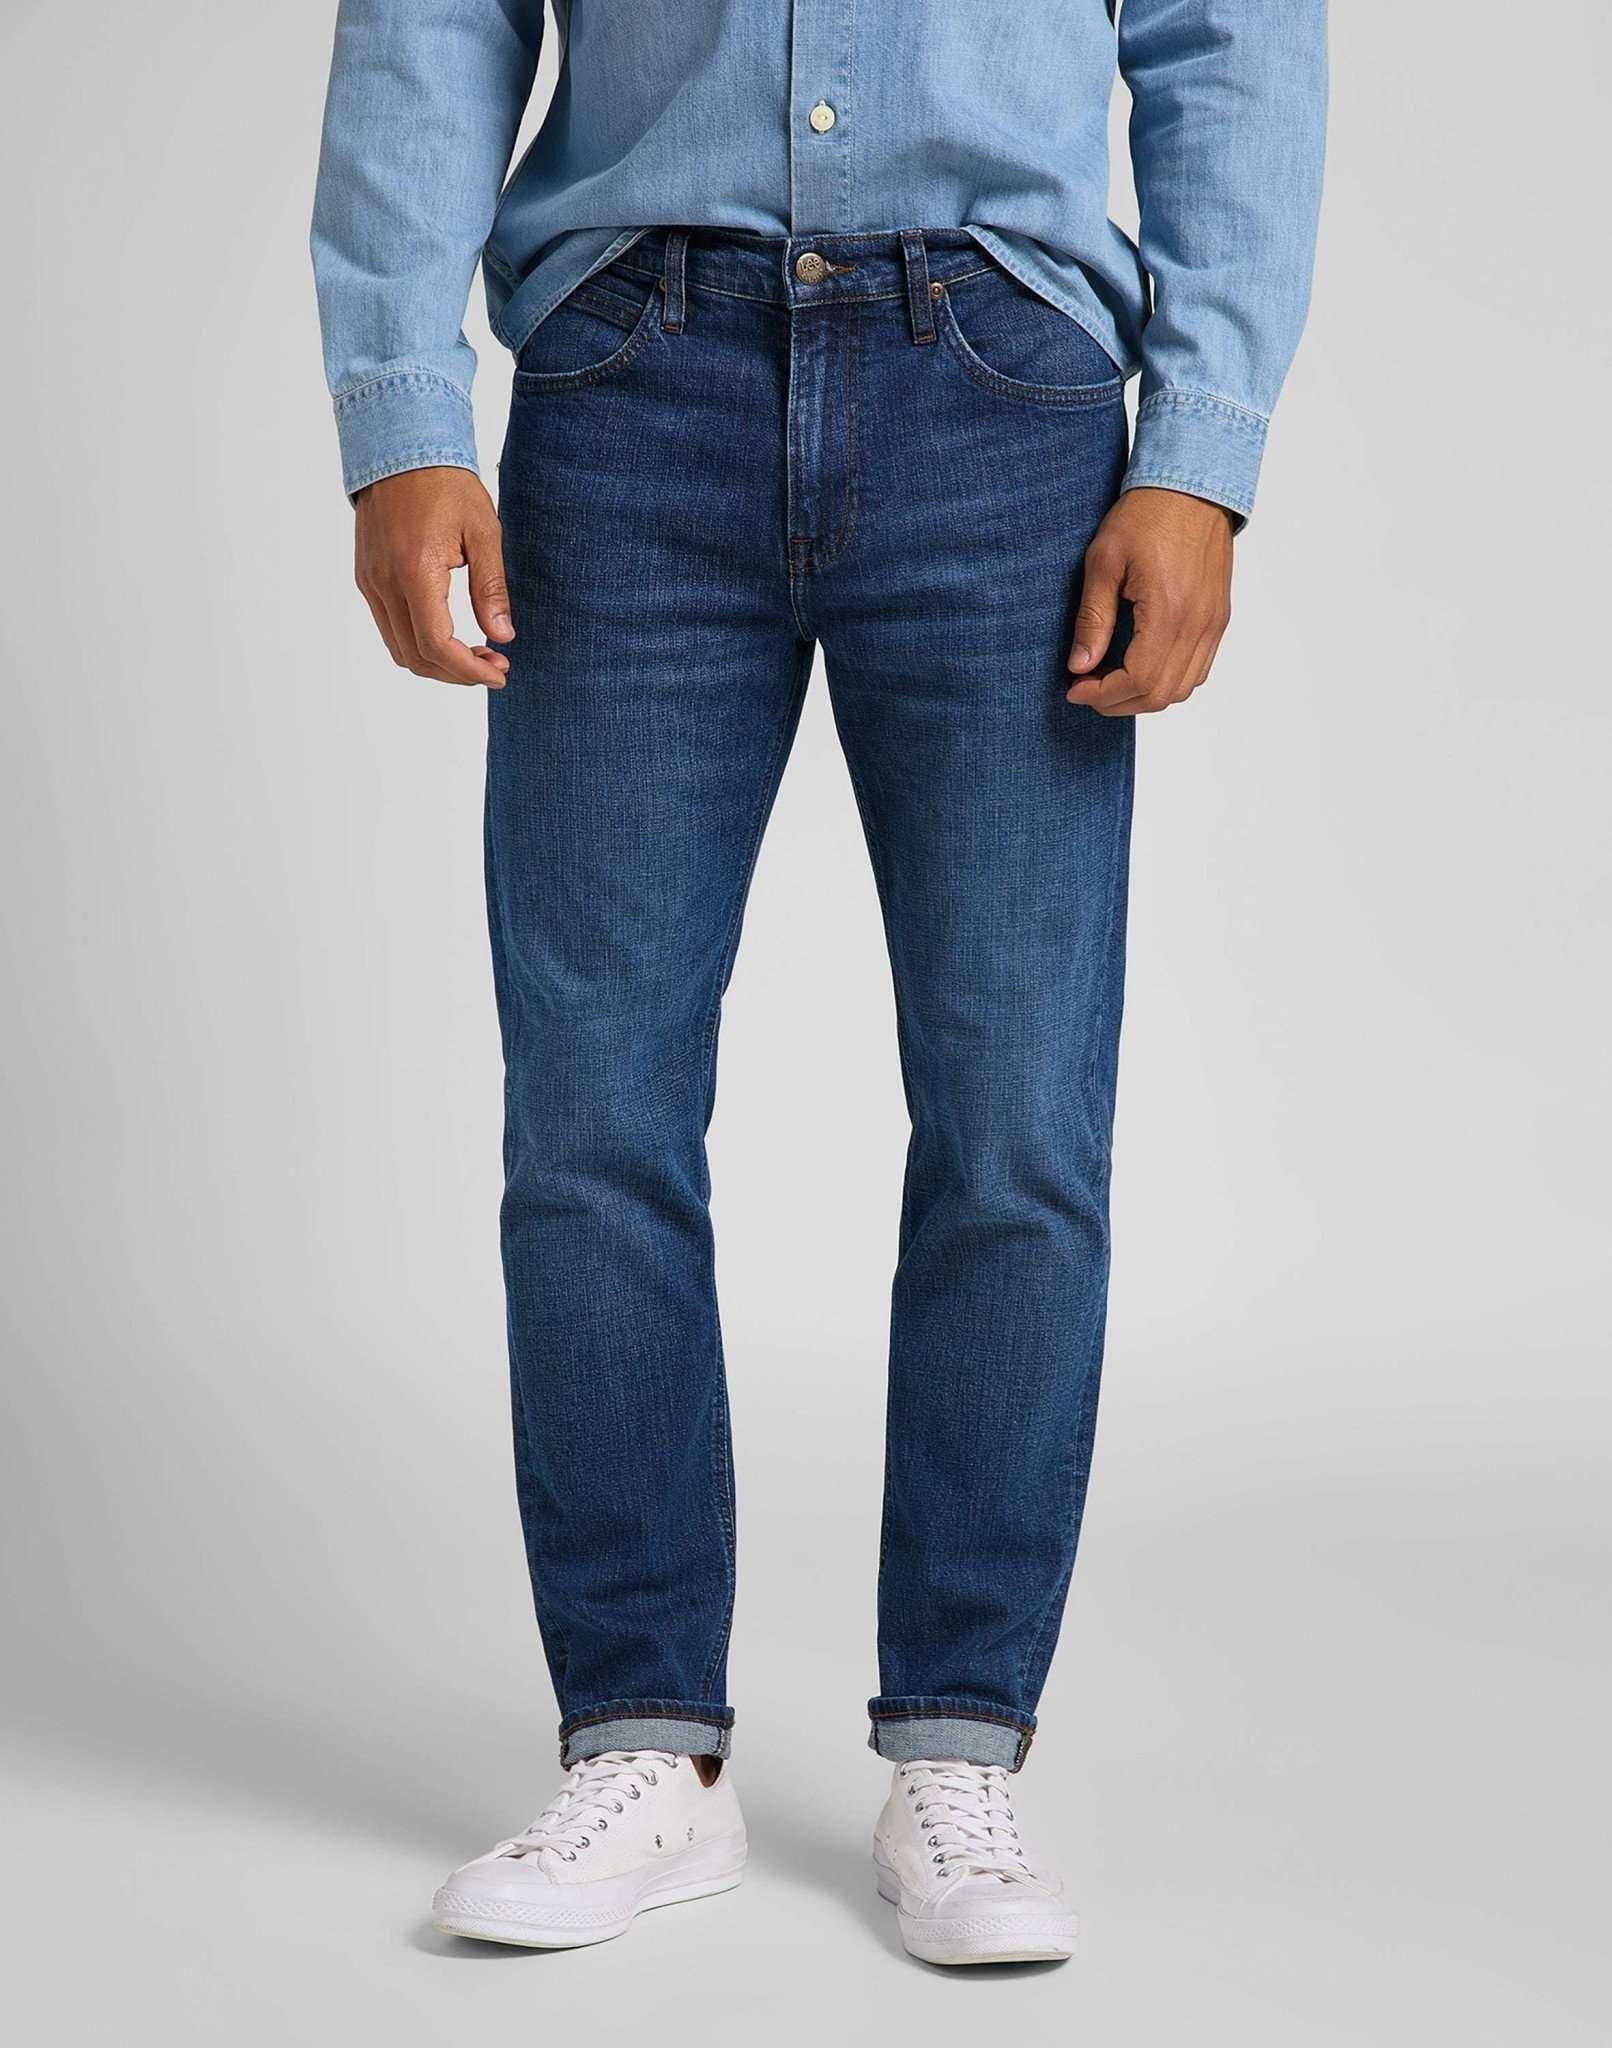 Jeans Straight Leg Austin Herren Blau Denim L34/W33 von Lee